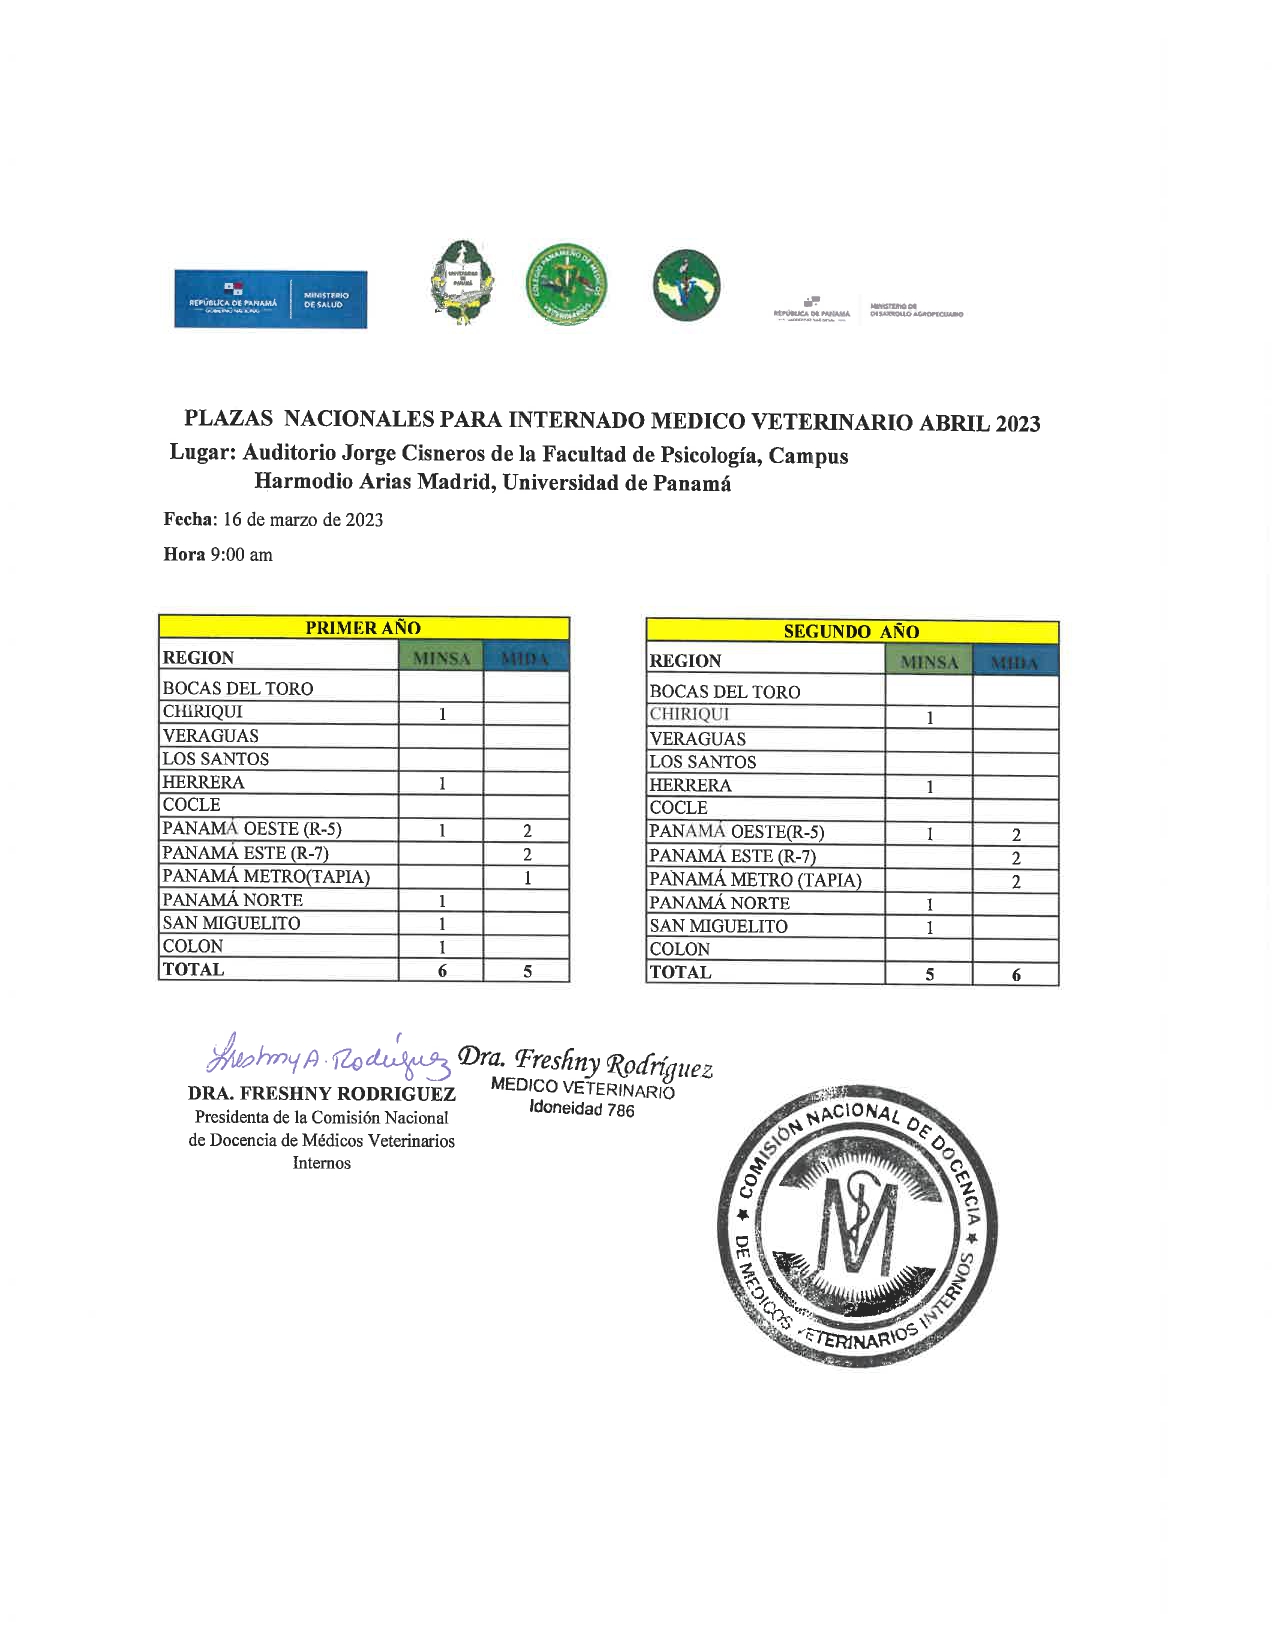 Listado de Plazas Nacionales del Internado Médico Veterinario - Abril 2023